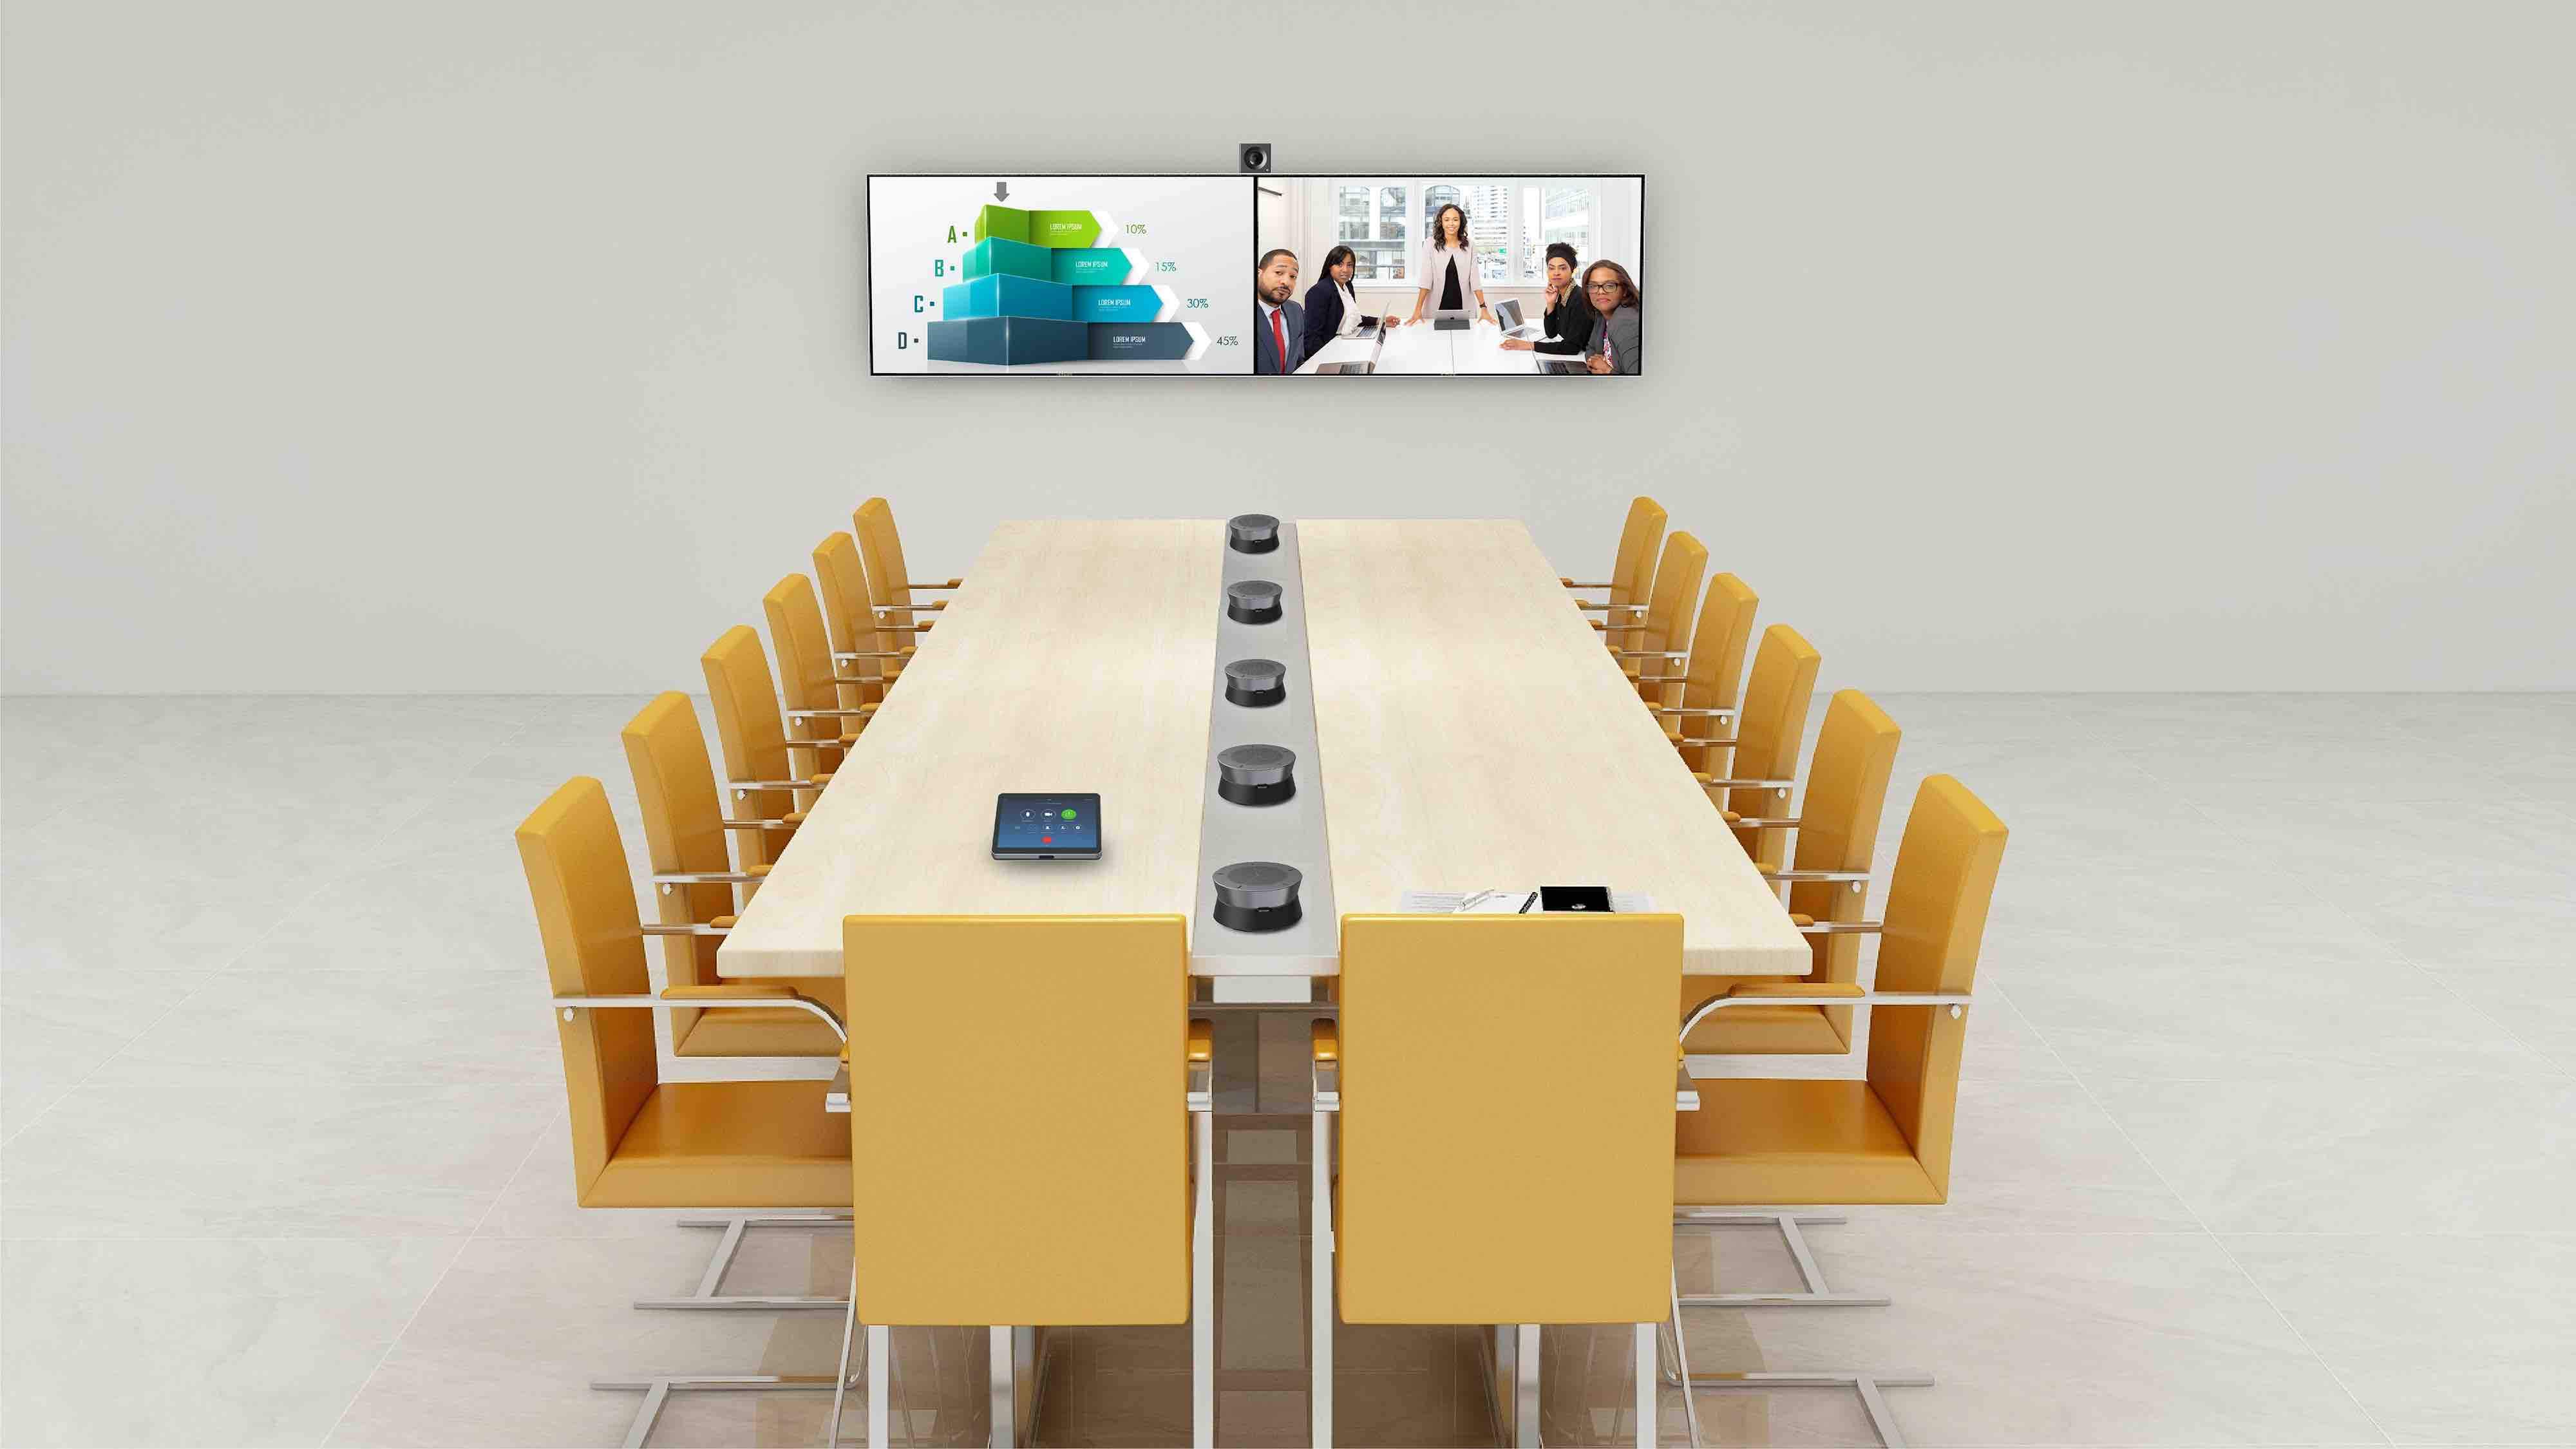 耳目达大型视频会议室双显示终端解决方案